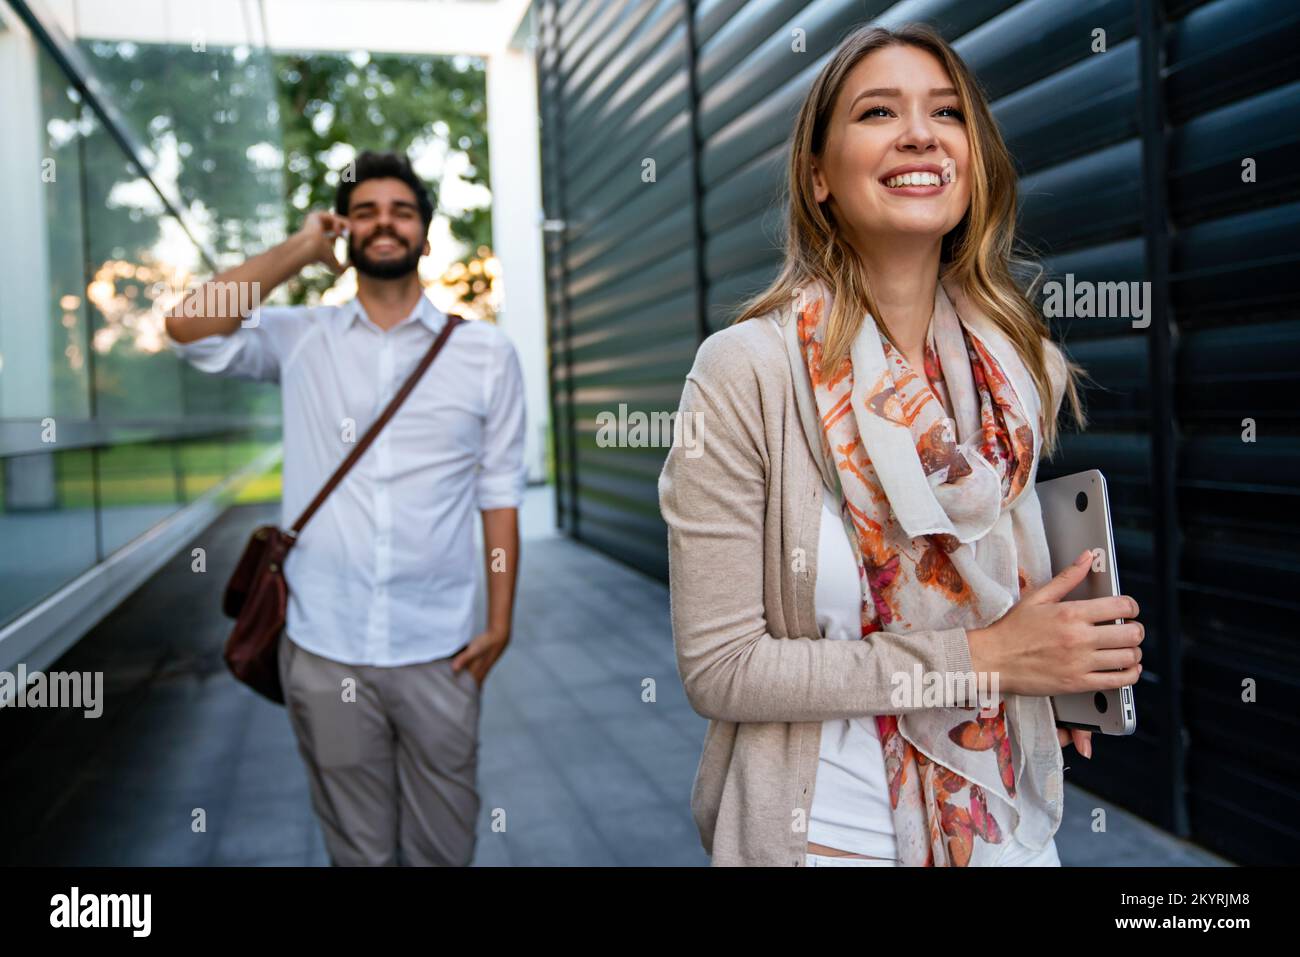 Portrait de jeunes gens d'affaires joyeux et heureux qui parlent, qui marchent à l'extérieur Banque D'Images